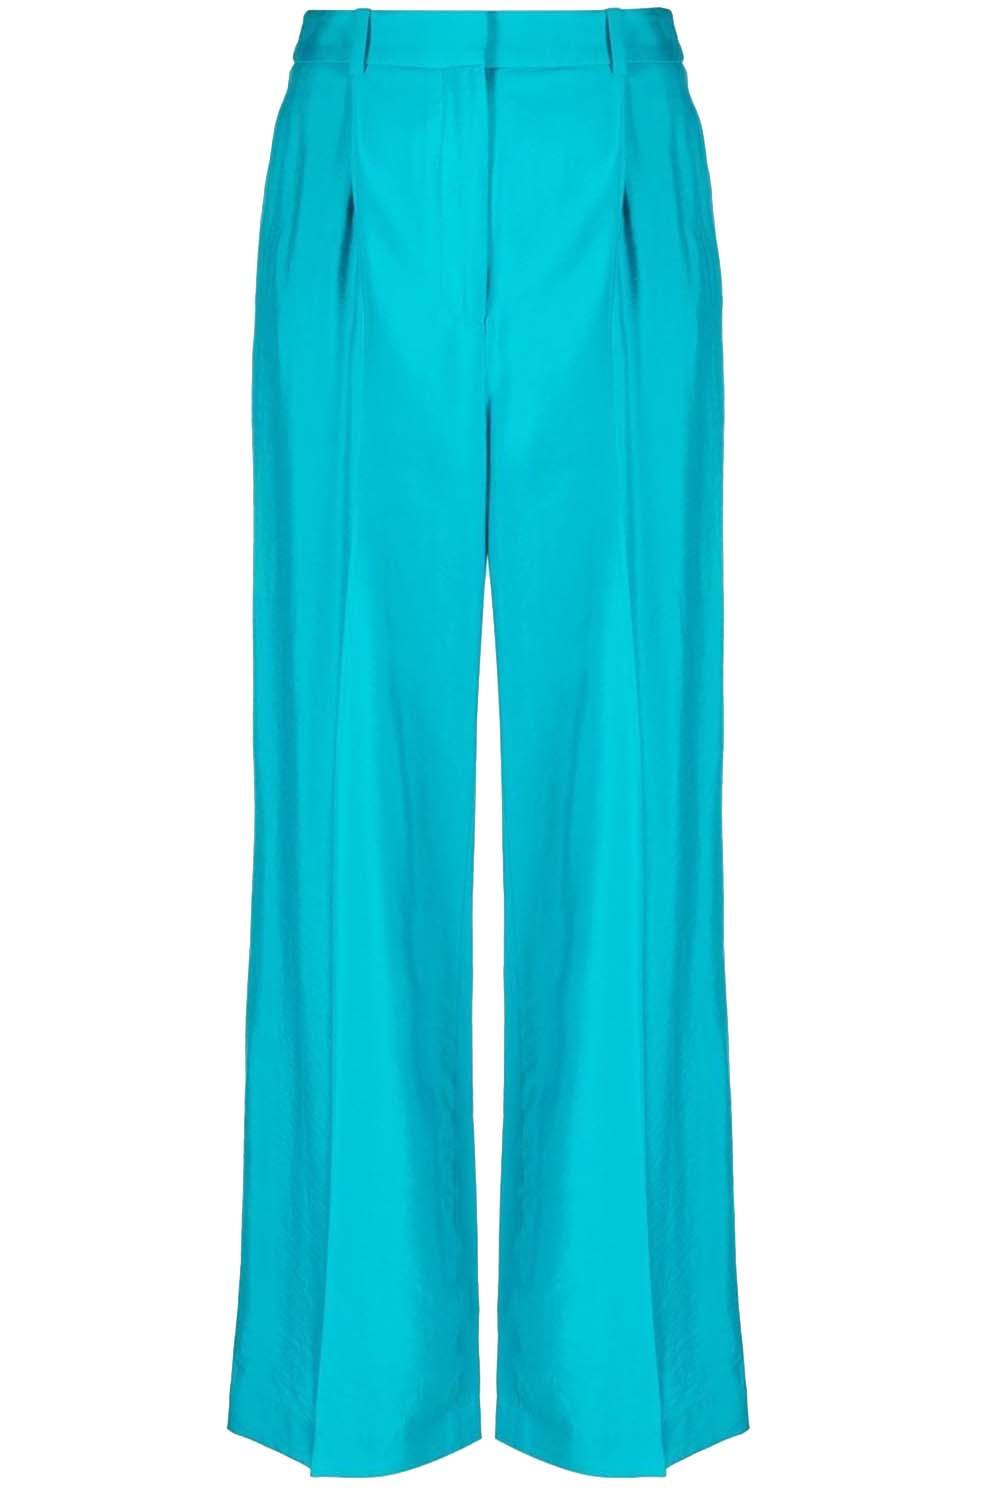 BA&SH Dubbele bandplooi pantalon Healy turquoise